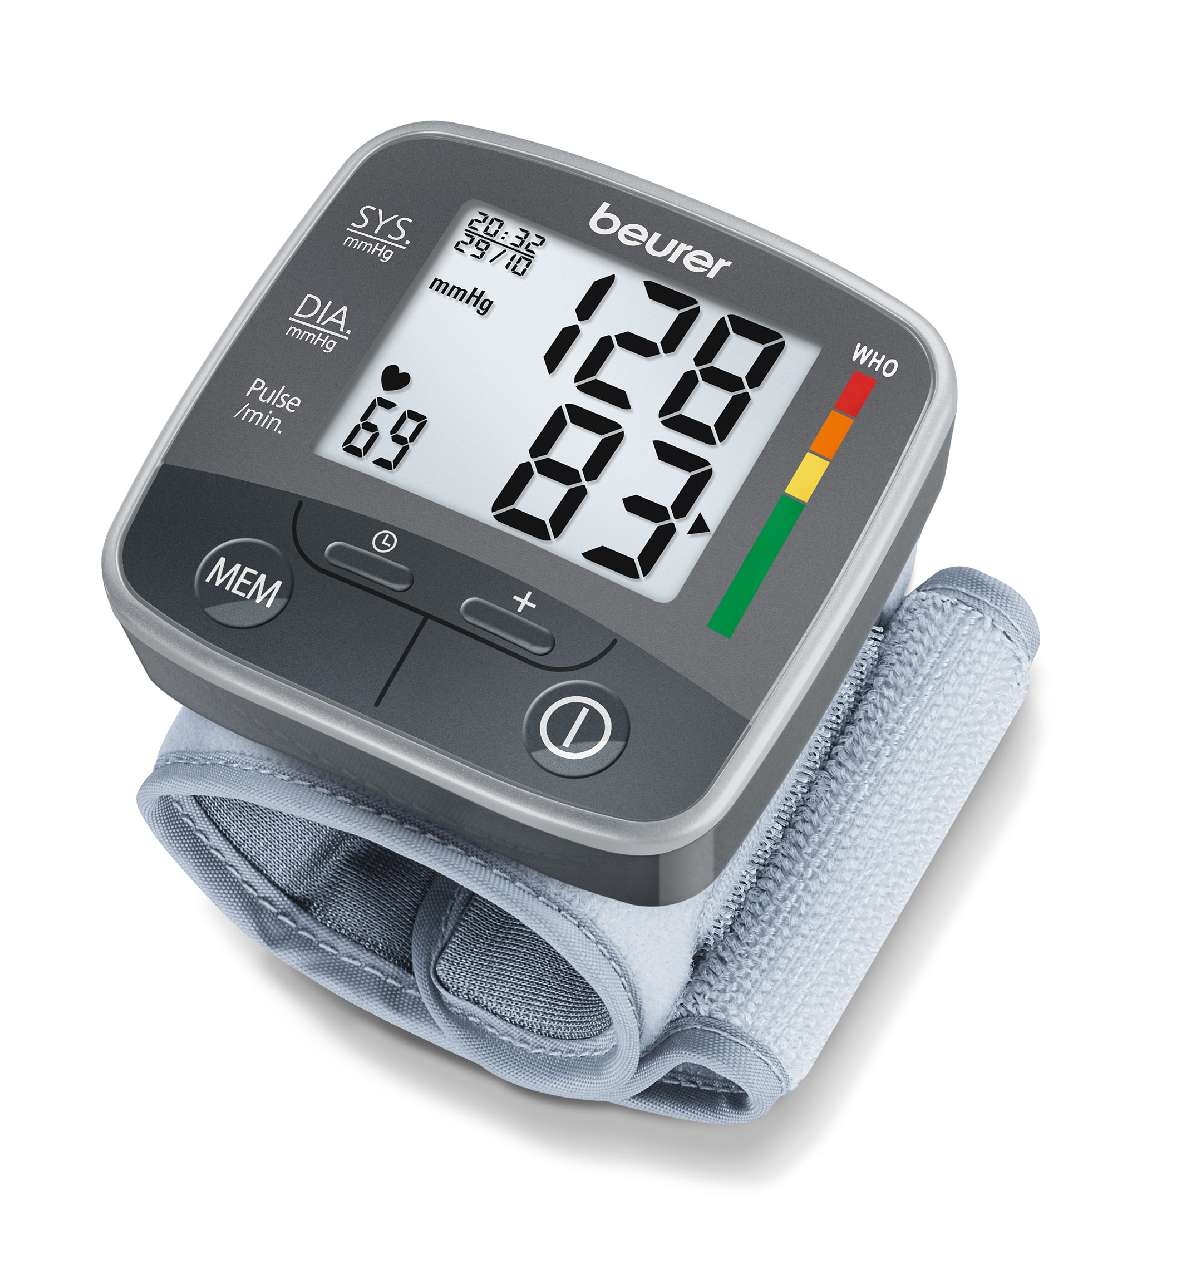 Mennyire pontos a csuklós vérnyomásmérő? - Az orvos válaszol